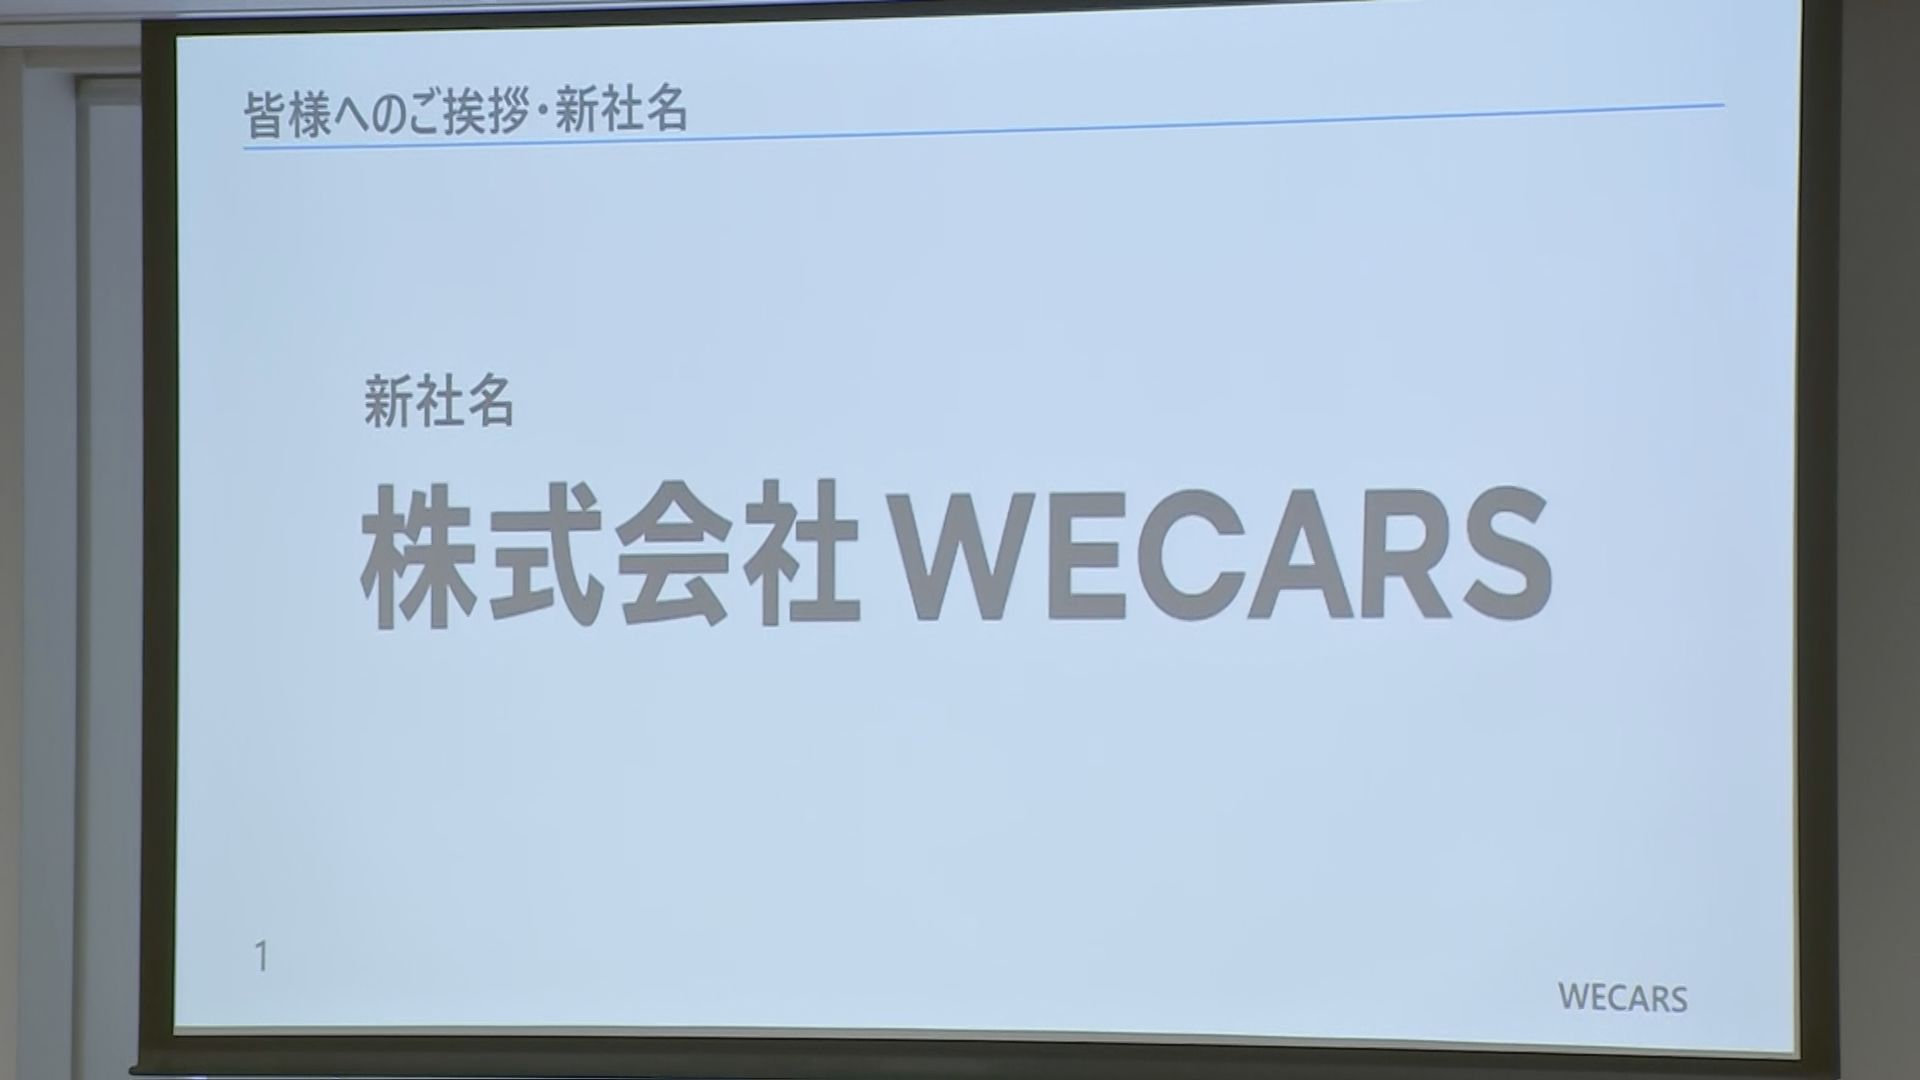 ビッグモーター新会社の名称は「WECARS(ウィーカーズ)」 社長には伊藤忠商事元執行役員の田中慎二郎氏が就任